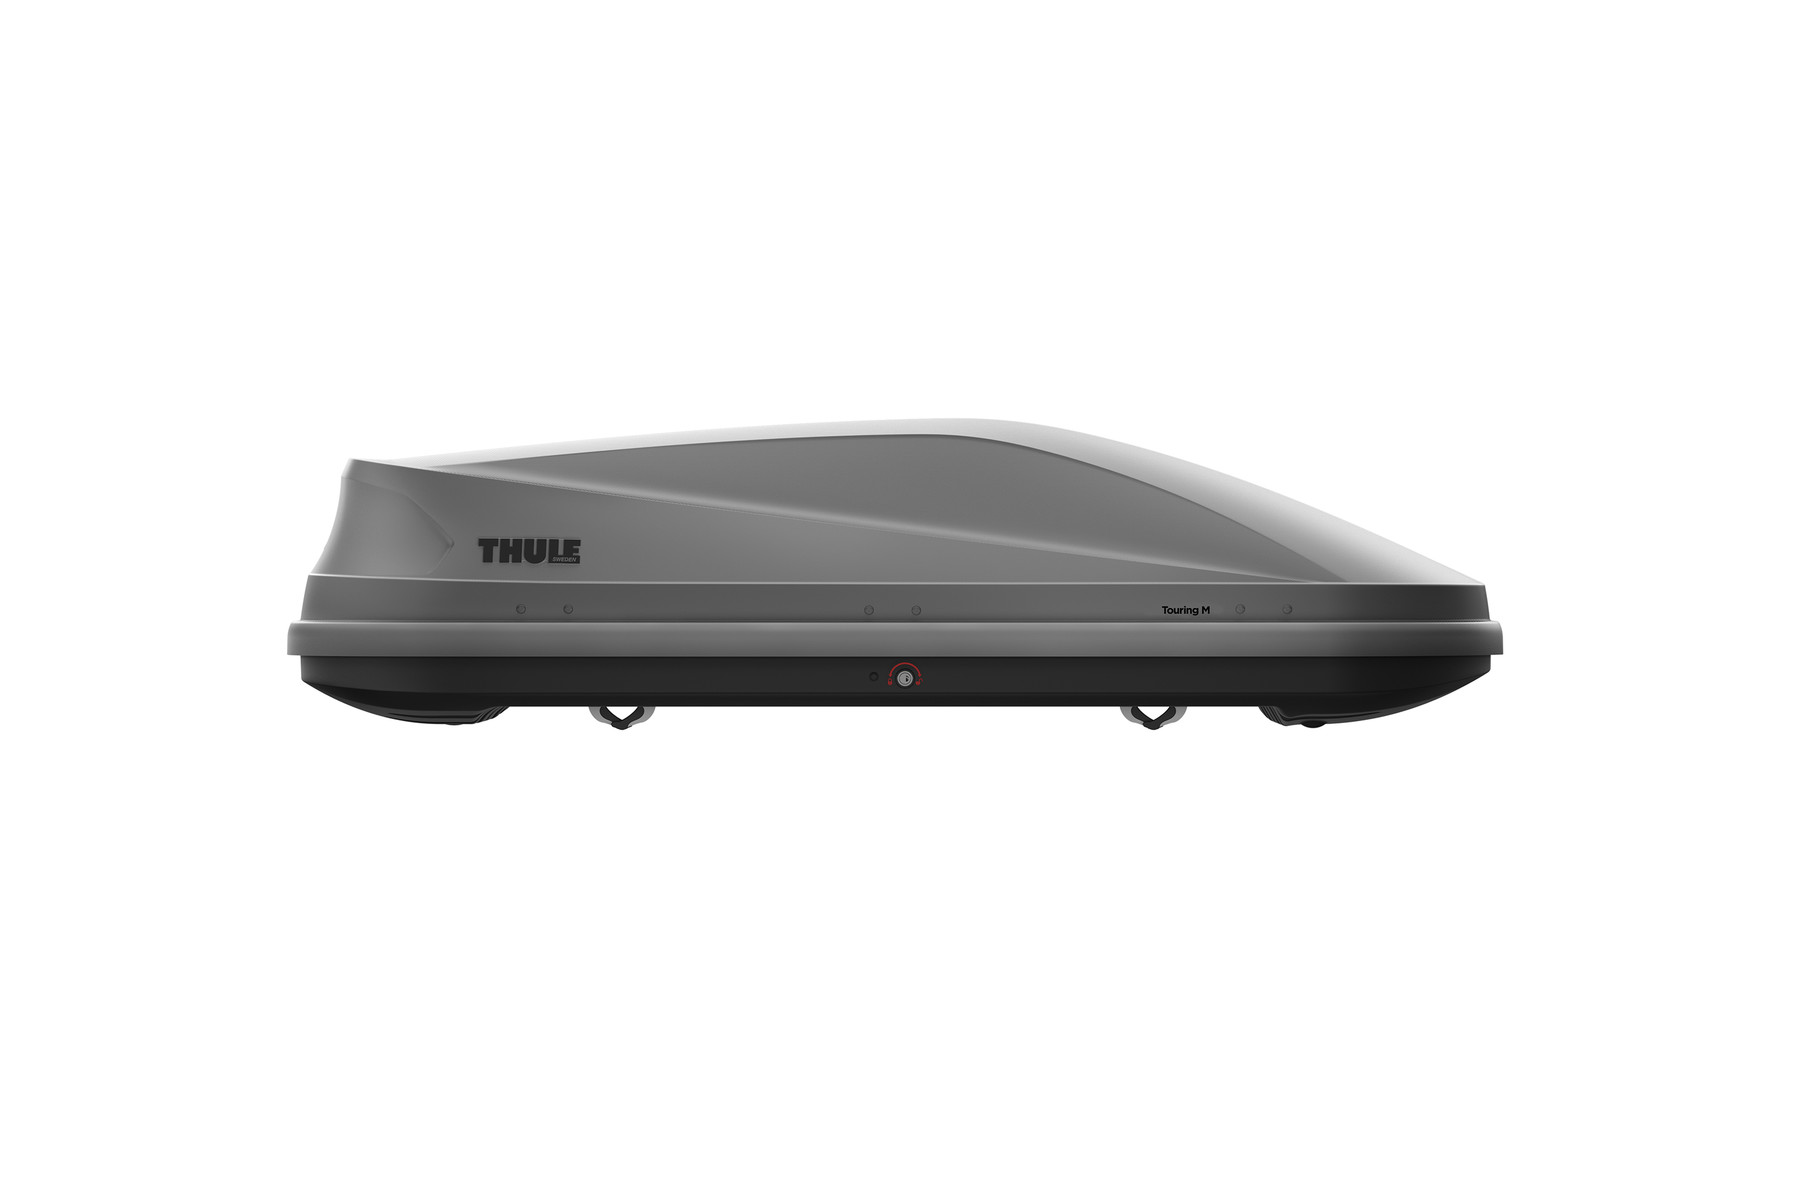 Автомобильный бокс Thule Touring M (200) титан 400л. (634200) автобокс на крышу koffer 480 литров размер 1980х820х450 черный глянец kbg480